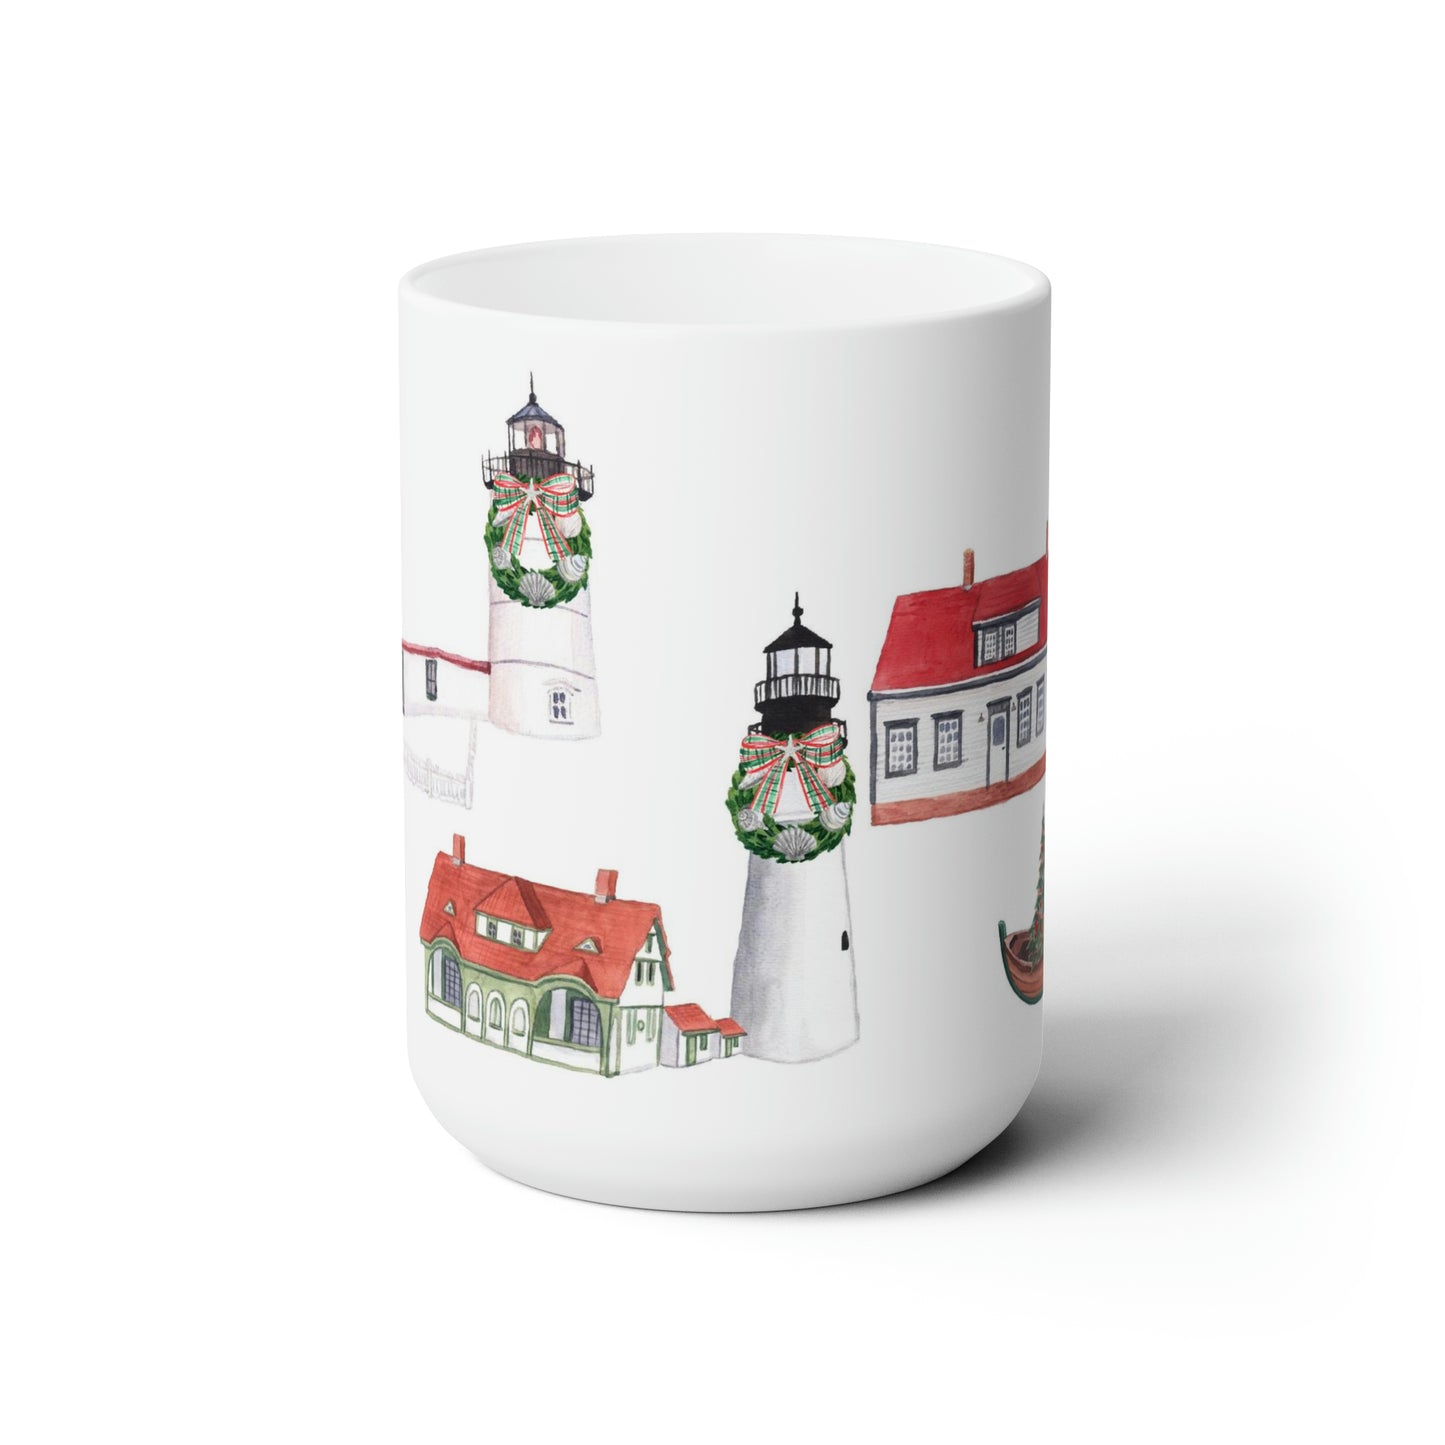 Maine Christmas Lighthouses Ceramic Mug